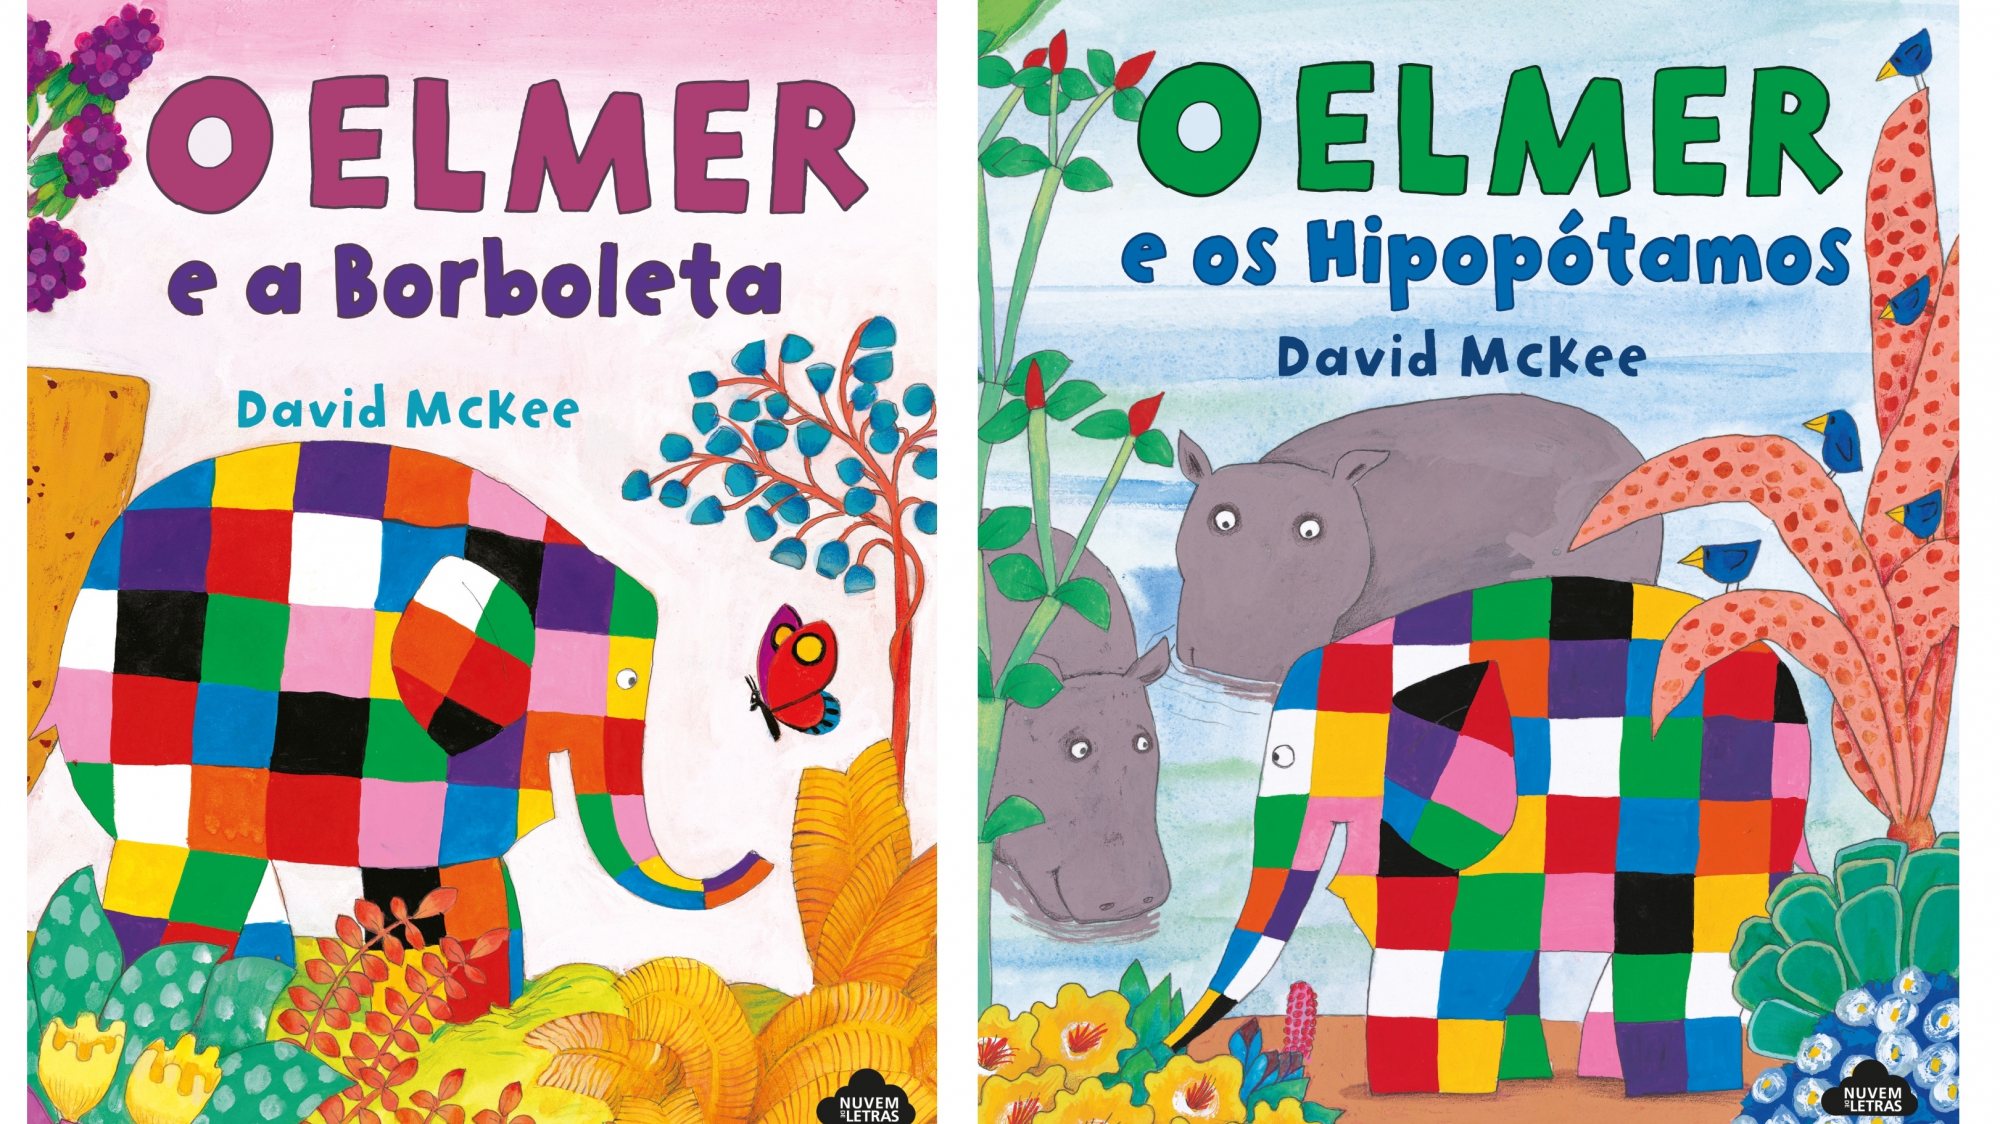 Sua principal obra &quot;Elmer&quot; é um dos livros infantis mais vendidos na história, tendo vendido cerca de 10 milhões de exemplares